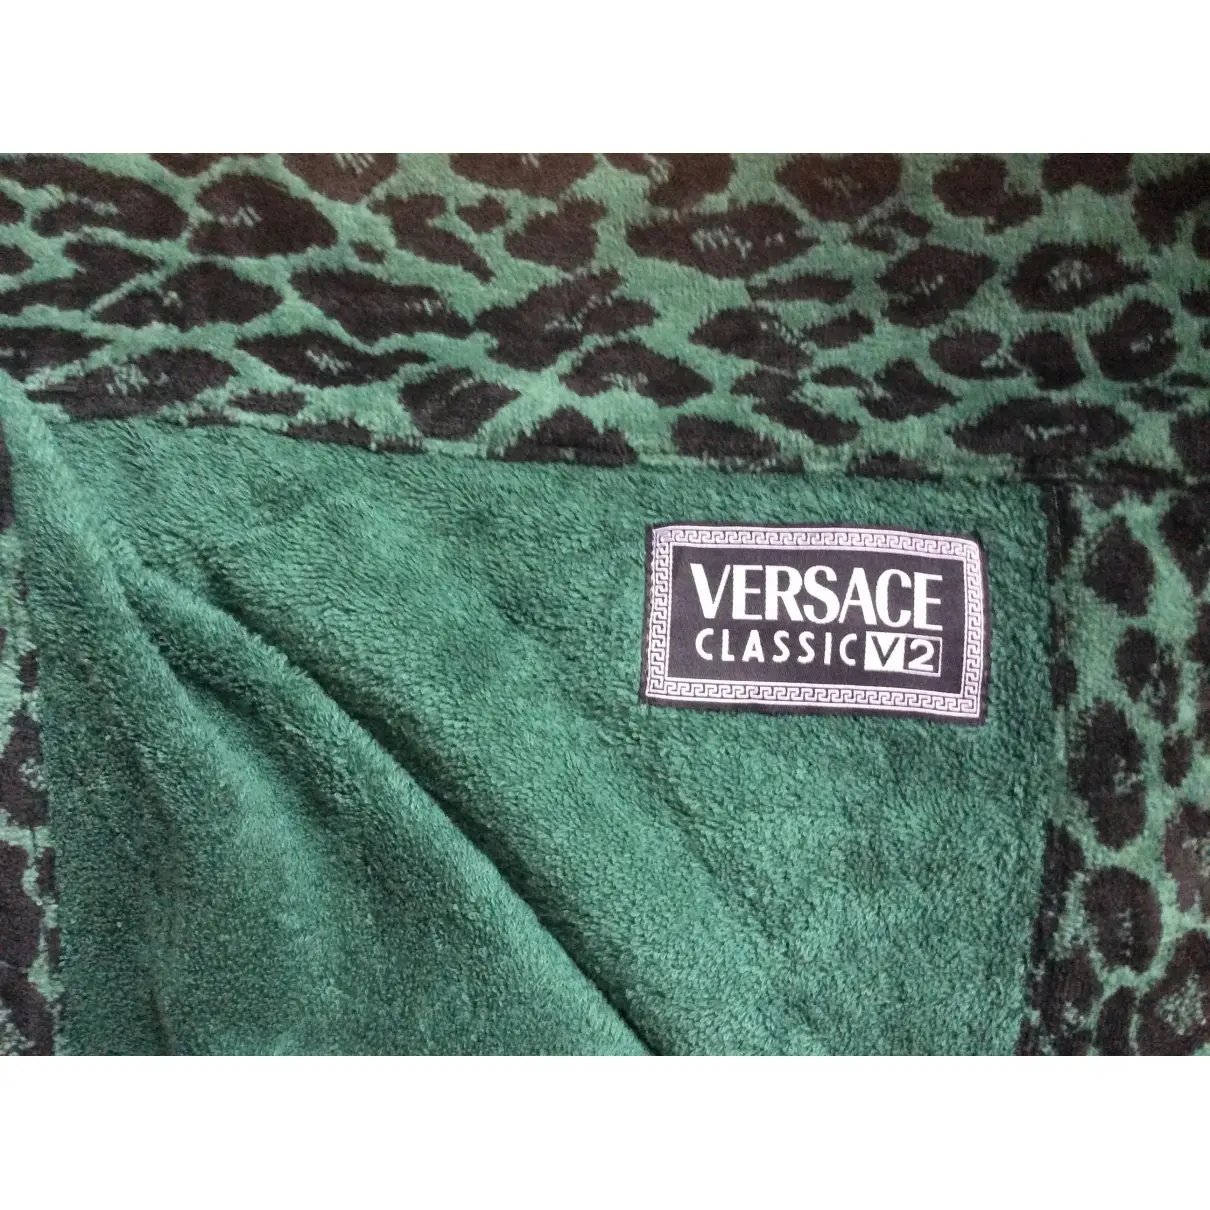 Buy Versace Bath accessory online